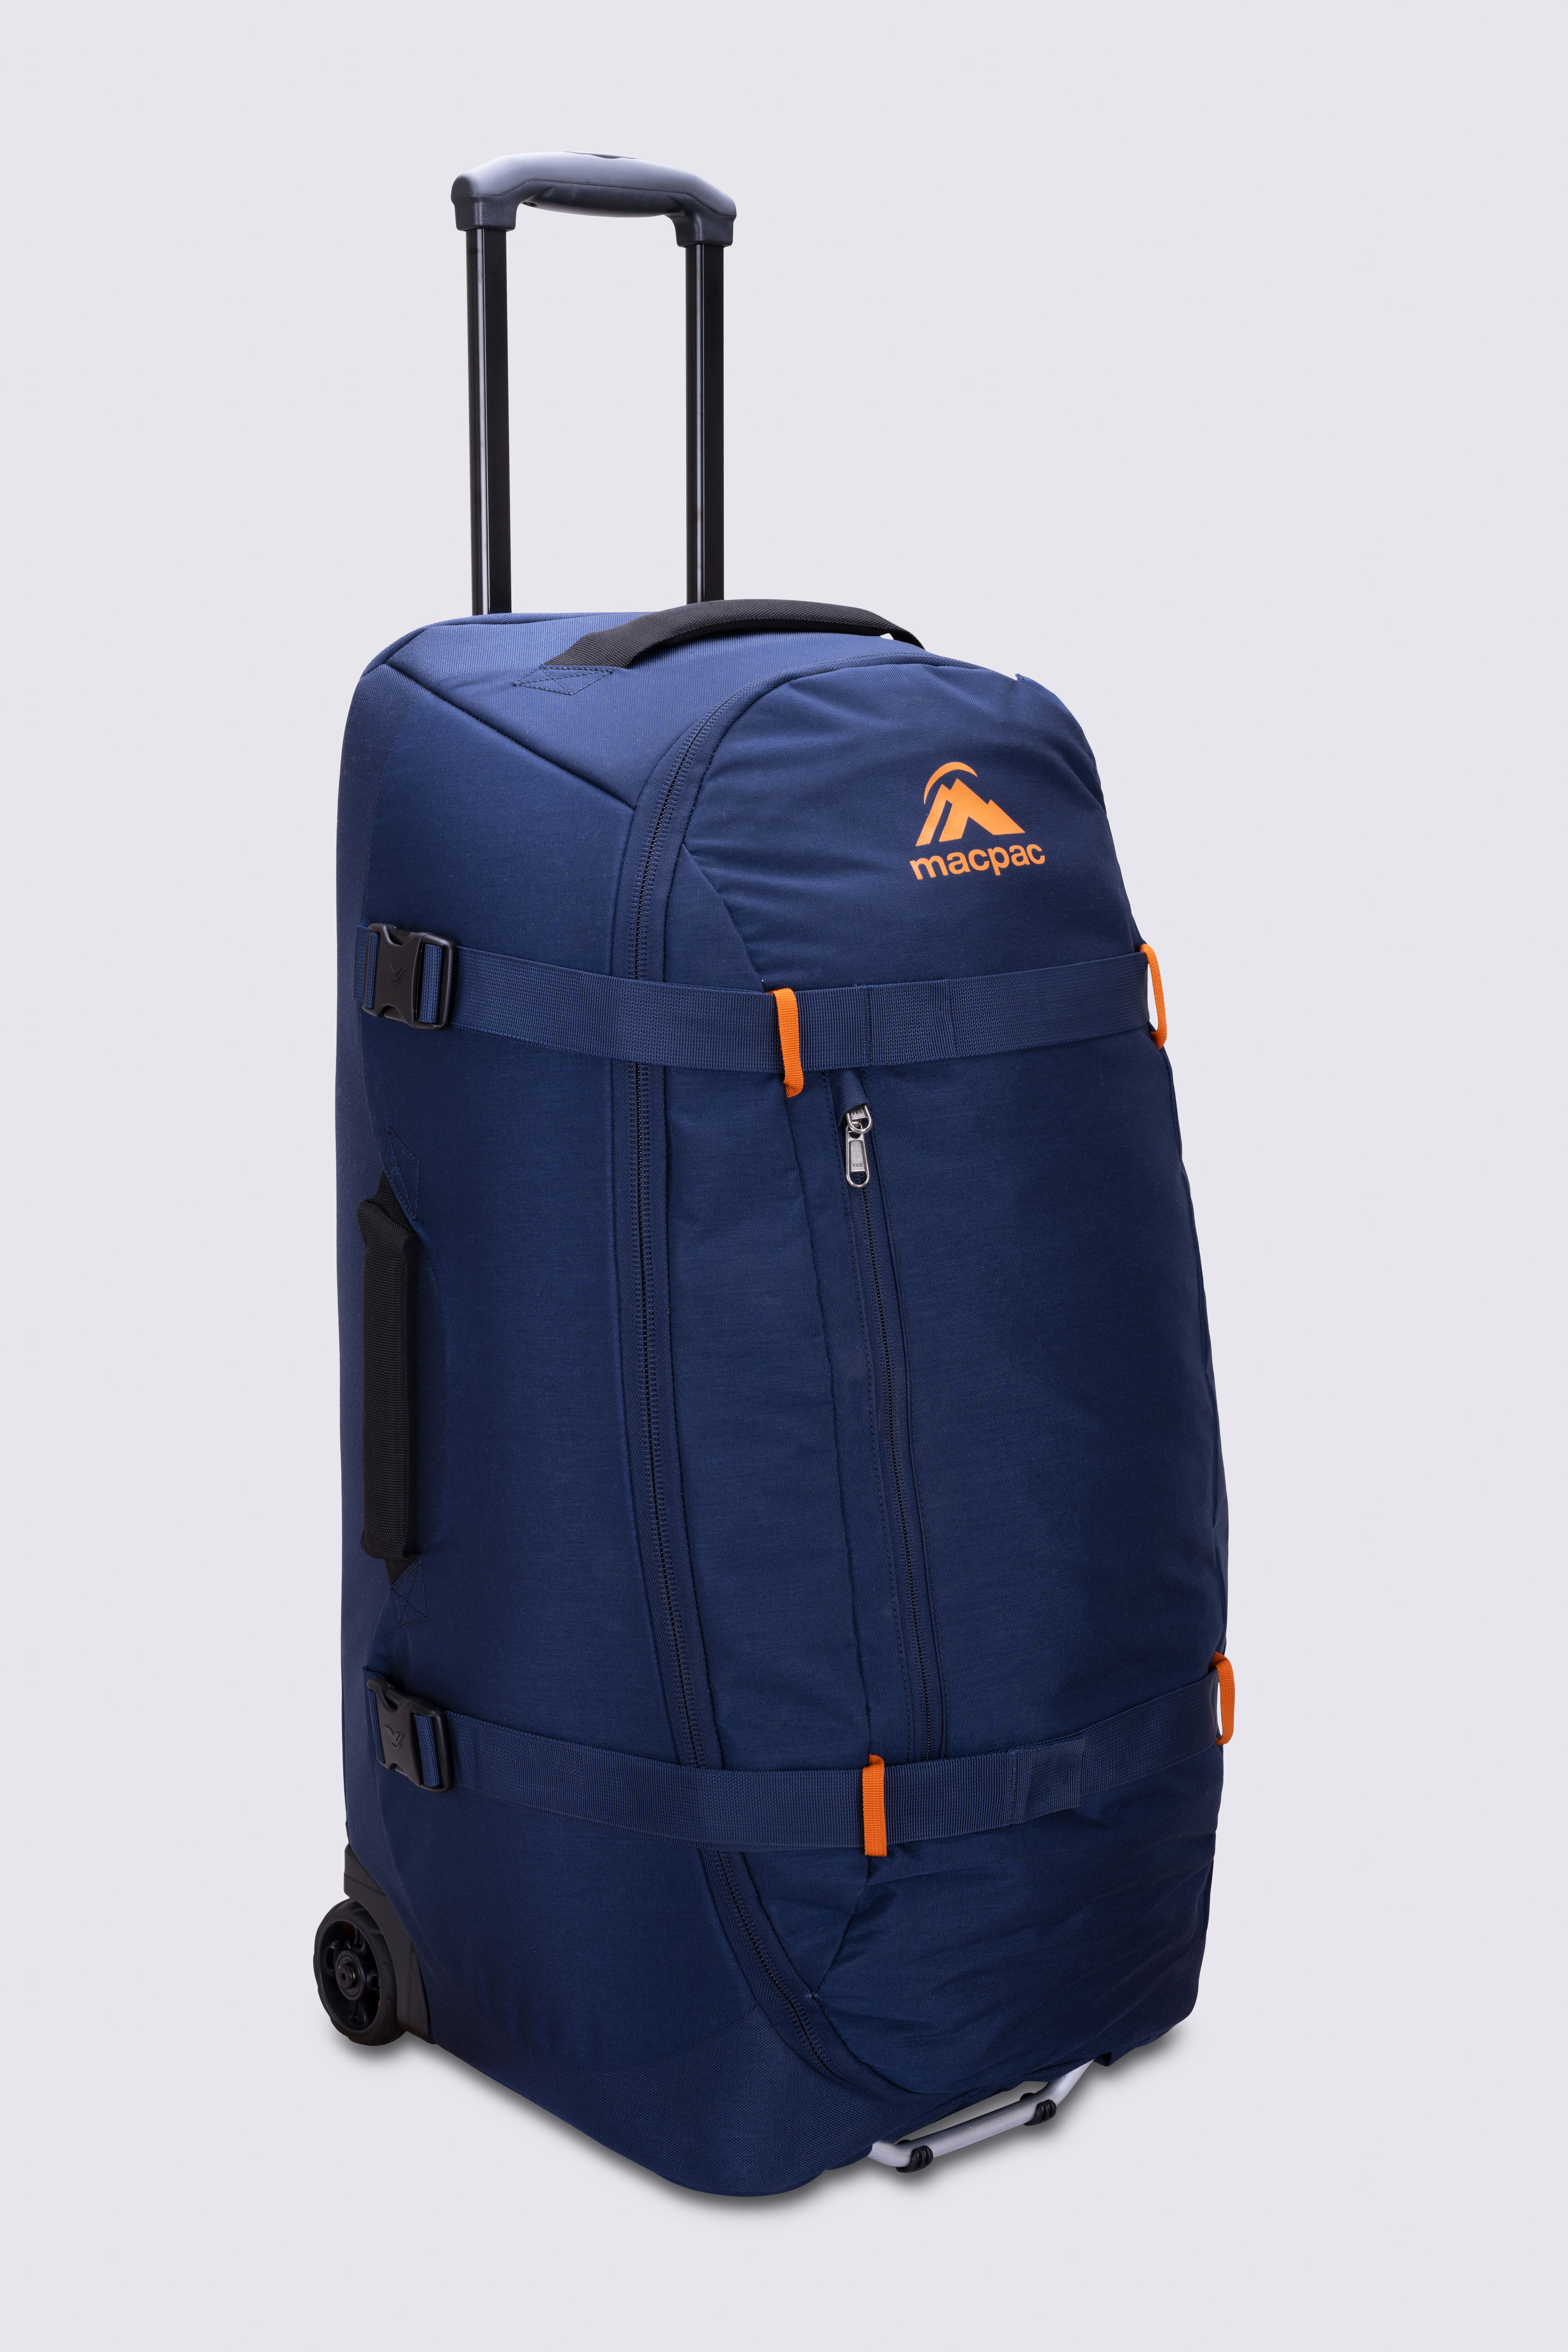 USHA SHRIRAM ABS Cabin Bag 20 inch Black Luggage Bag 55cmTrolley Suitc –  Dpanda Store